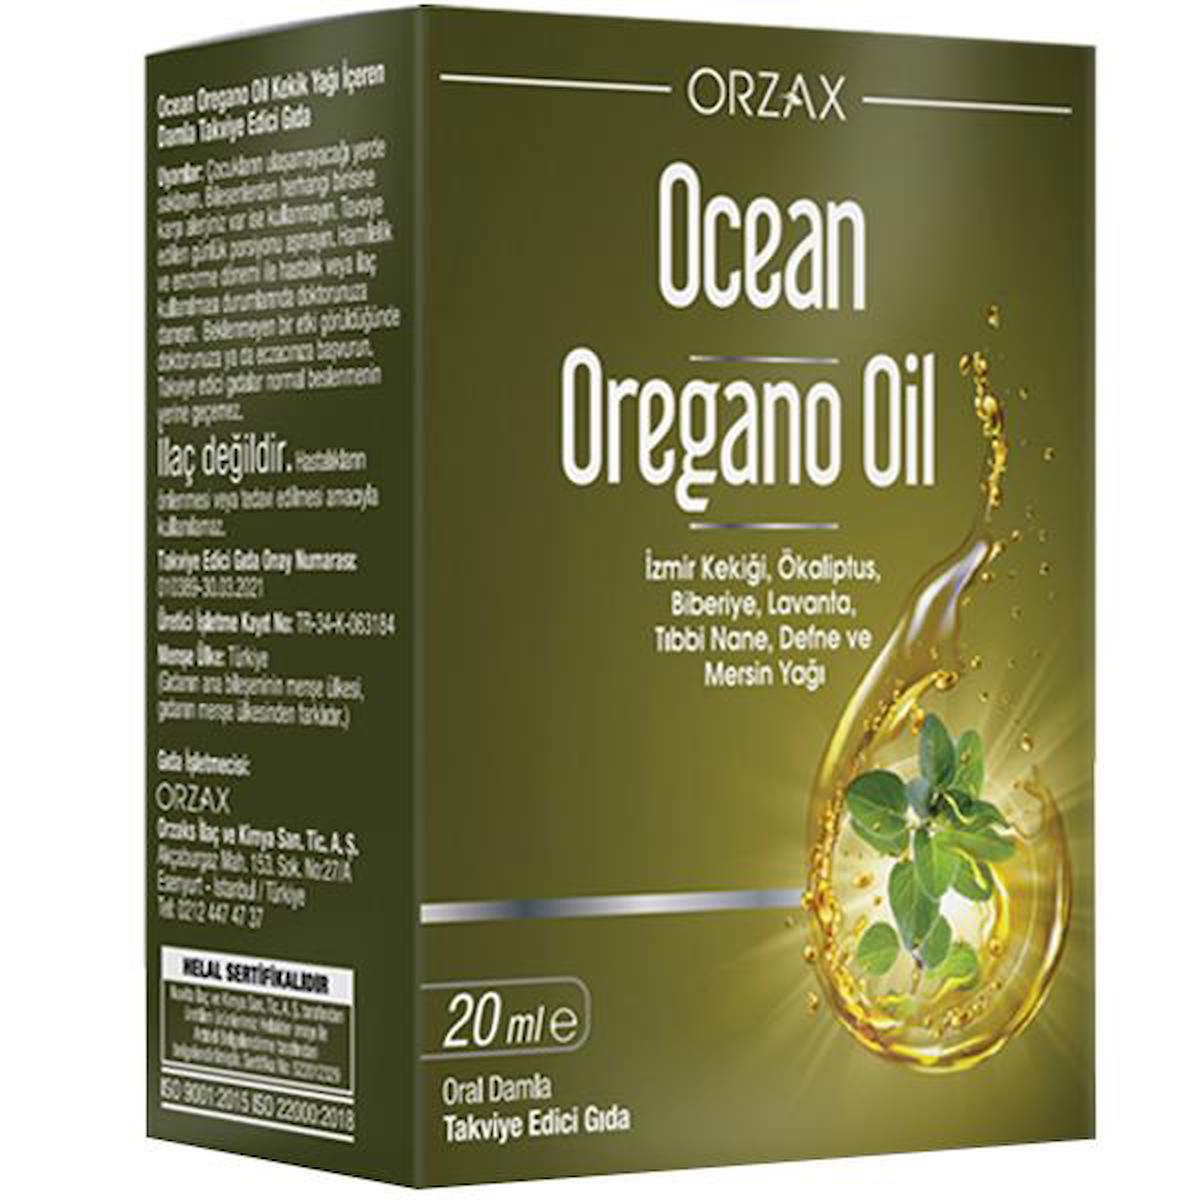 Ocean Orzax Oregano Oil Aromasız Unisex Vitamin 20 ml